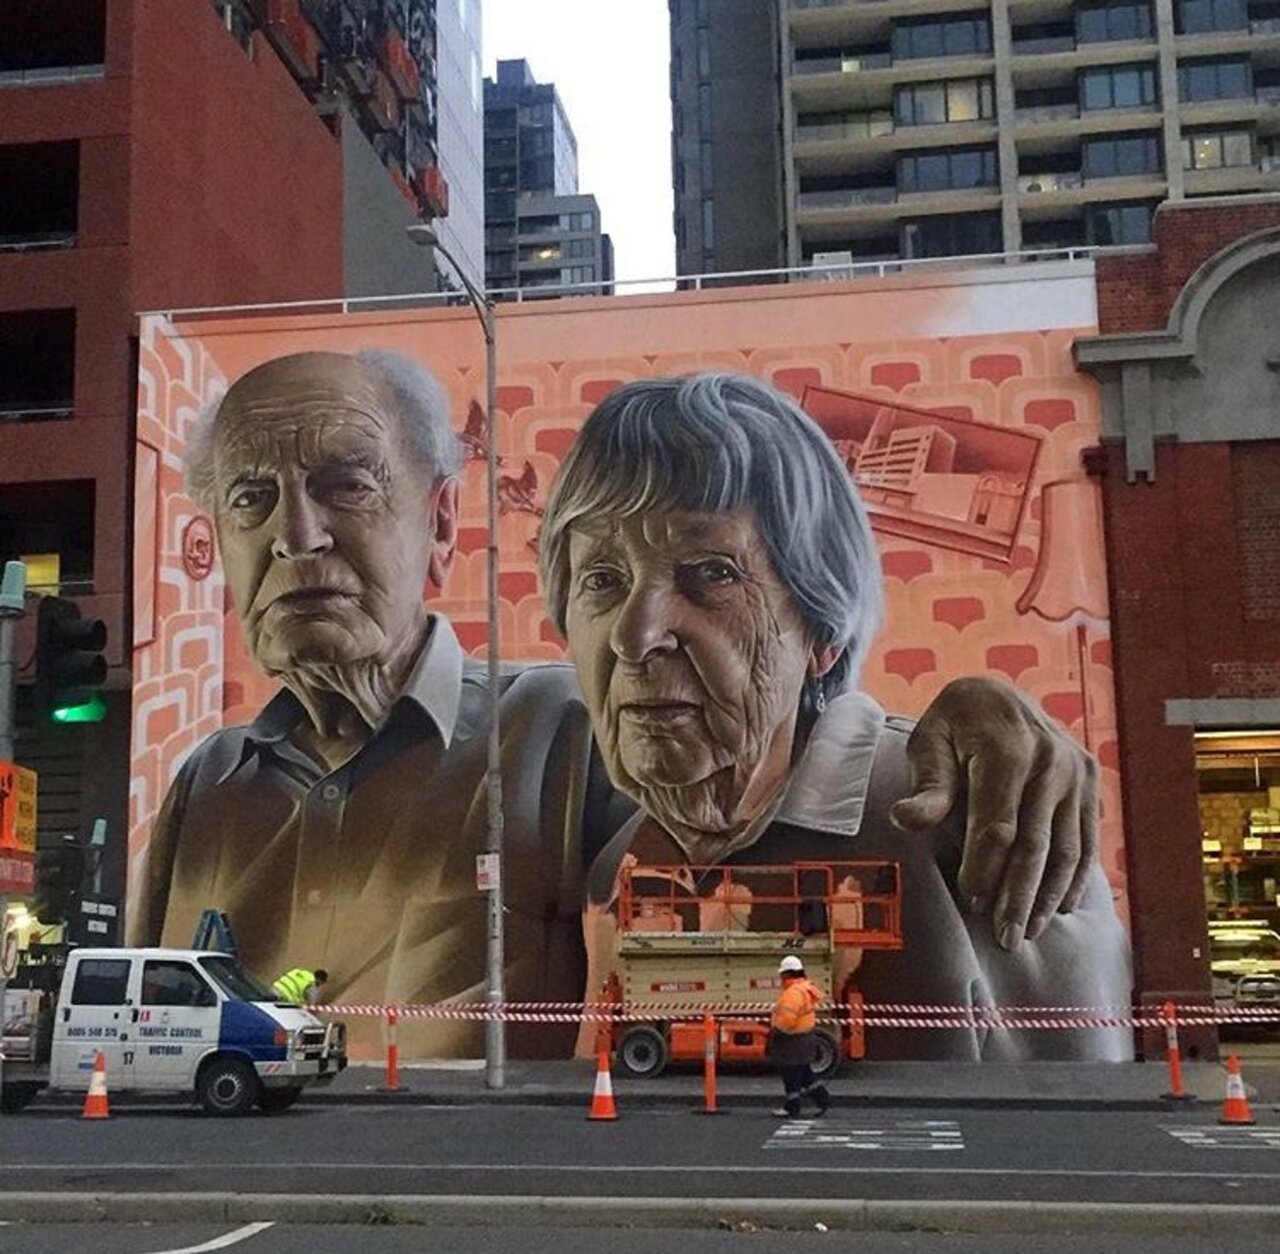 Incredible New Street Art in progress by Smug One in Melbourne  #art #mural #graffiti #streetart https://t.co/DF0ZEgSZOv